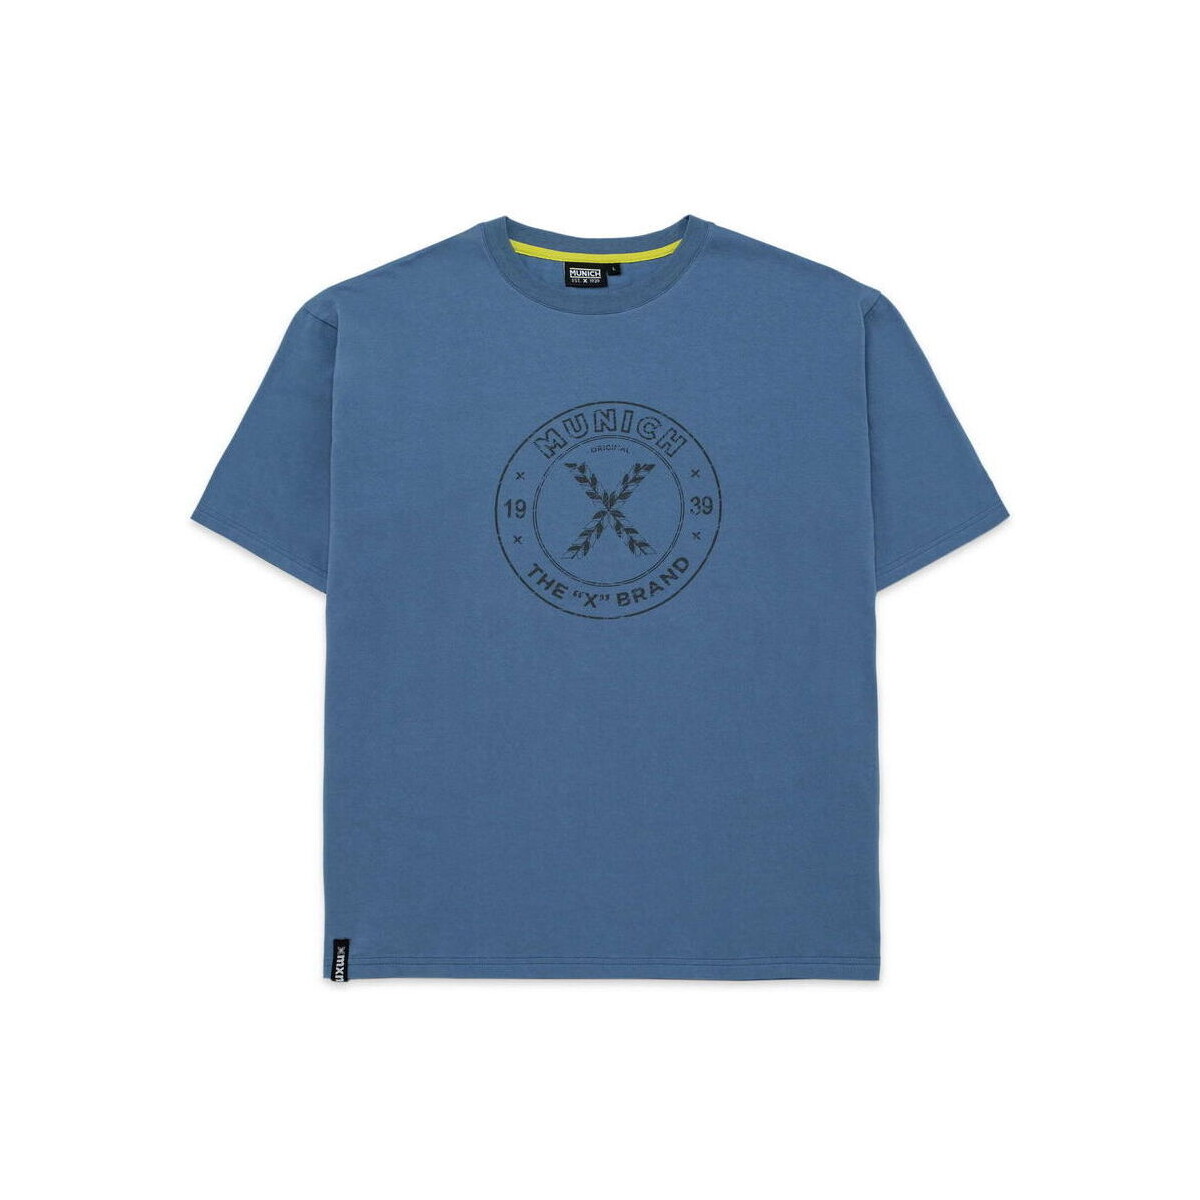 Kleidung Herren T-Shirts Munich T-shirt vintage Blau